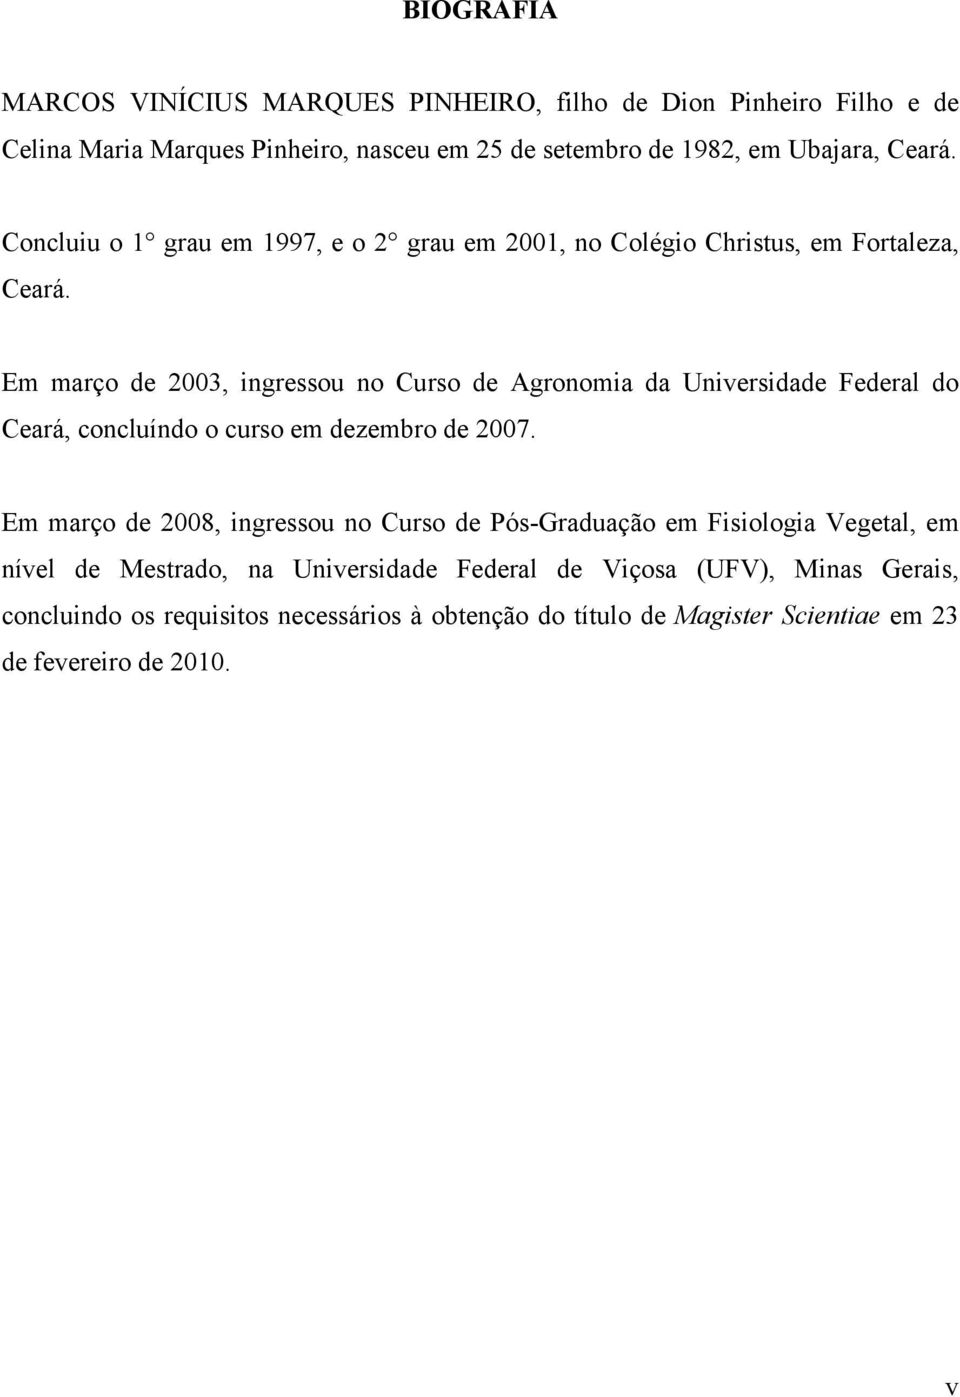 Em março de 2003, ingressou no Curso de Agronomia da Universidade Federal do Ceará, concluíndo o curso em dezembro de 2007.